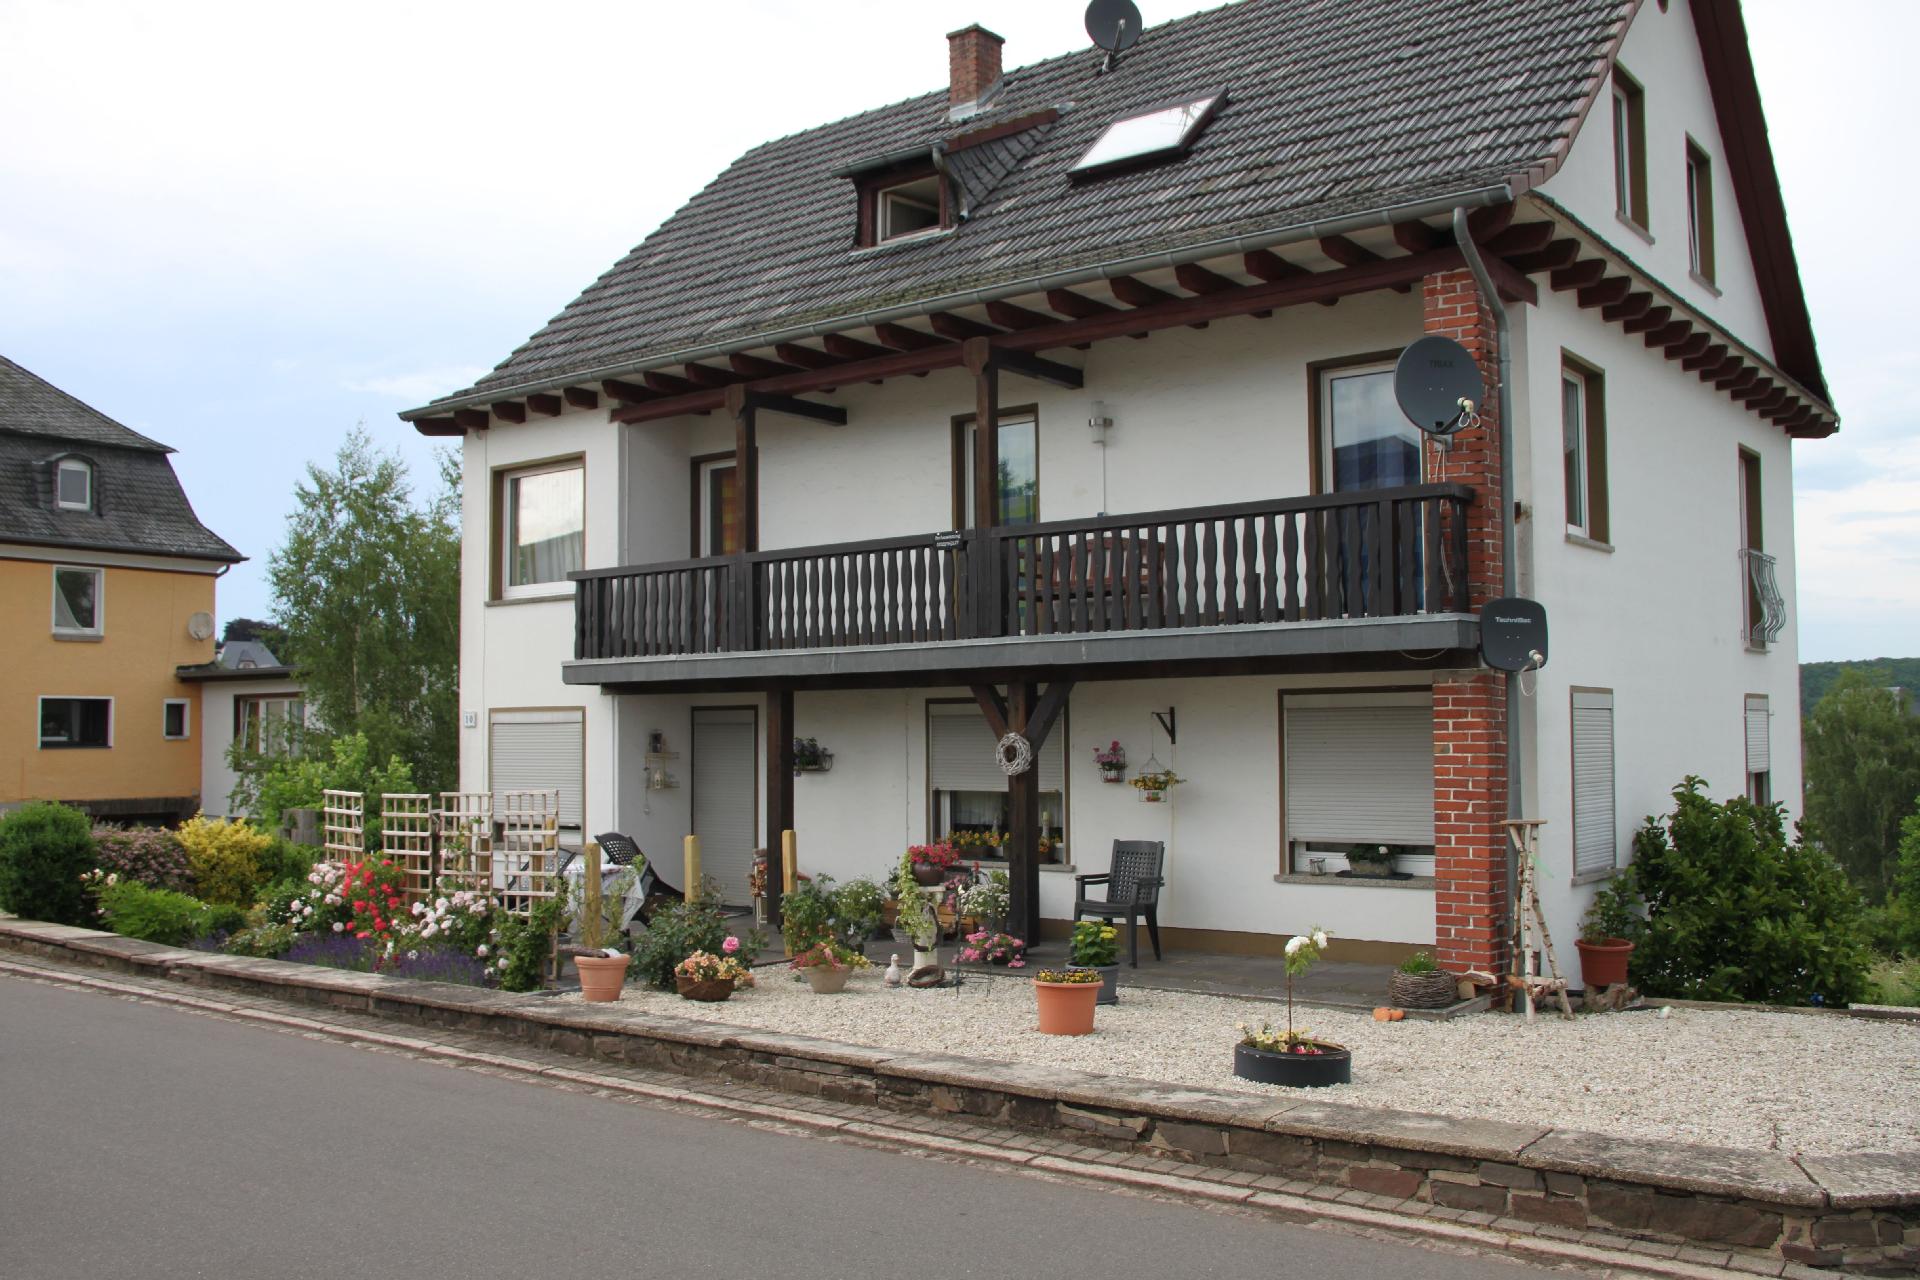 Ferienwohnung für 4 Personen ca. 77 m² i  in der Eifel